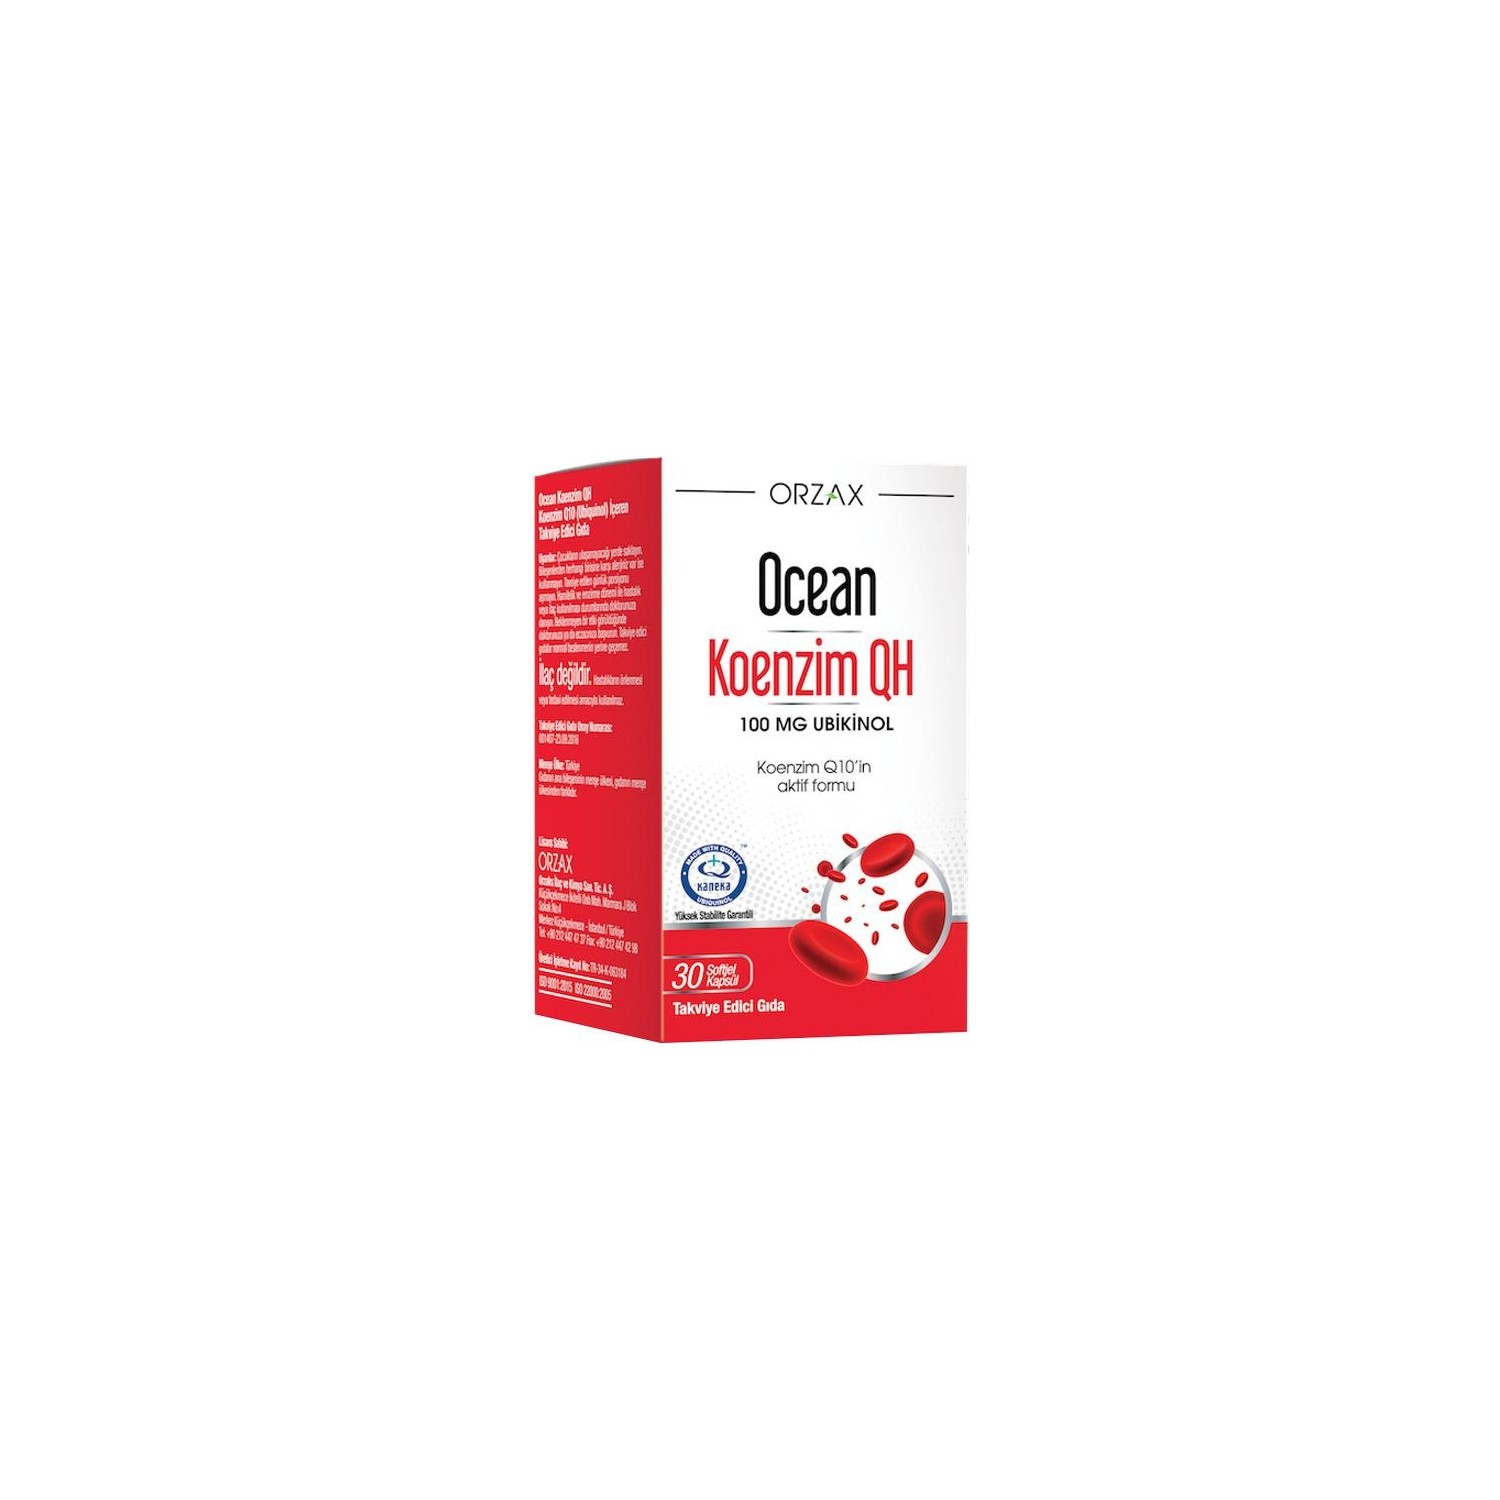 Коэнзим Qh Orzax 100 мг, 30 капсул коэнзим q10 турамин капсулы 0 5г 30шт